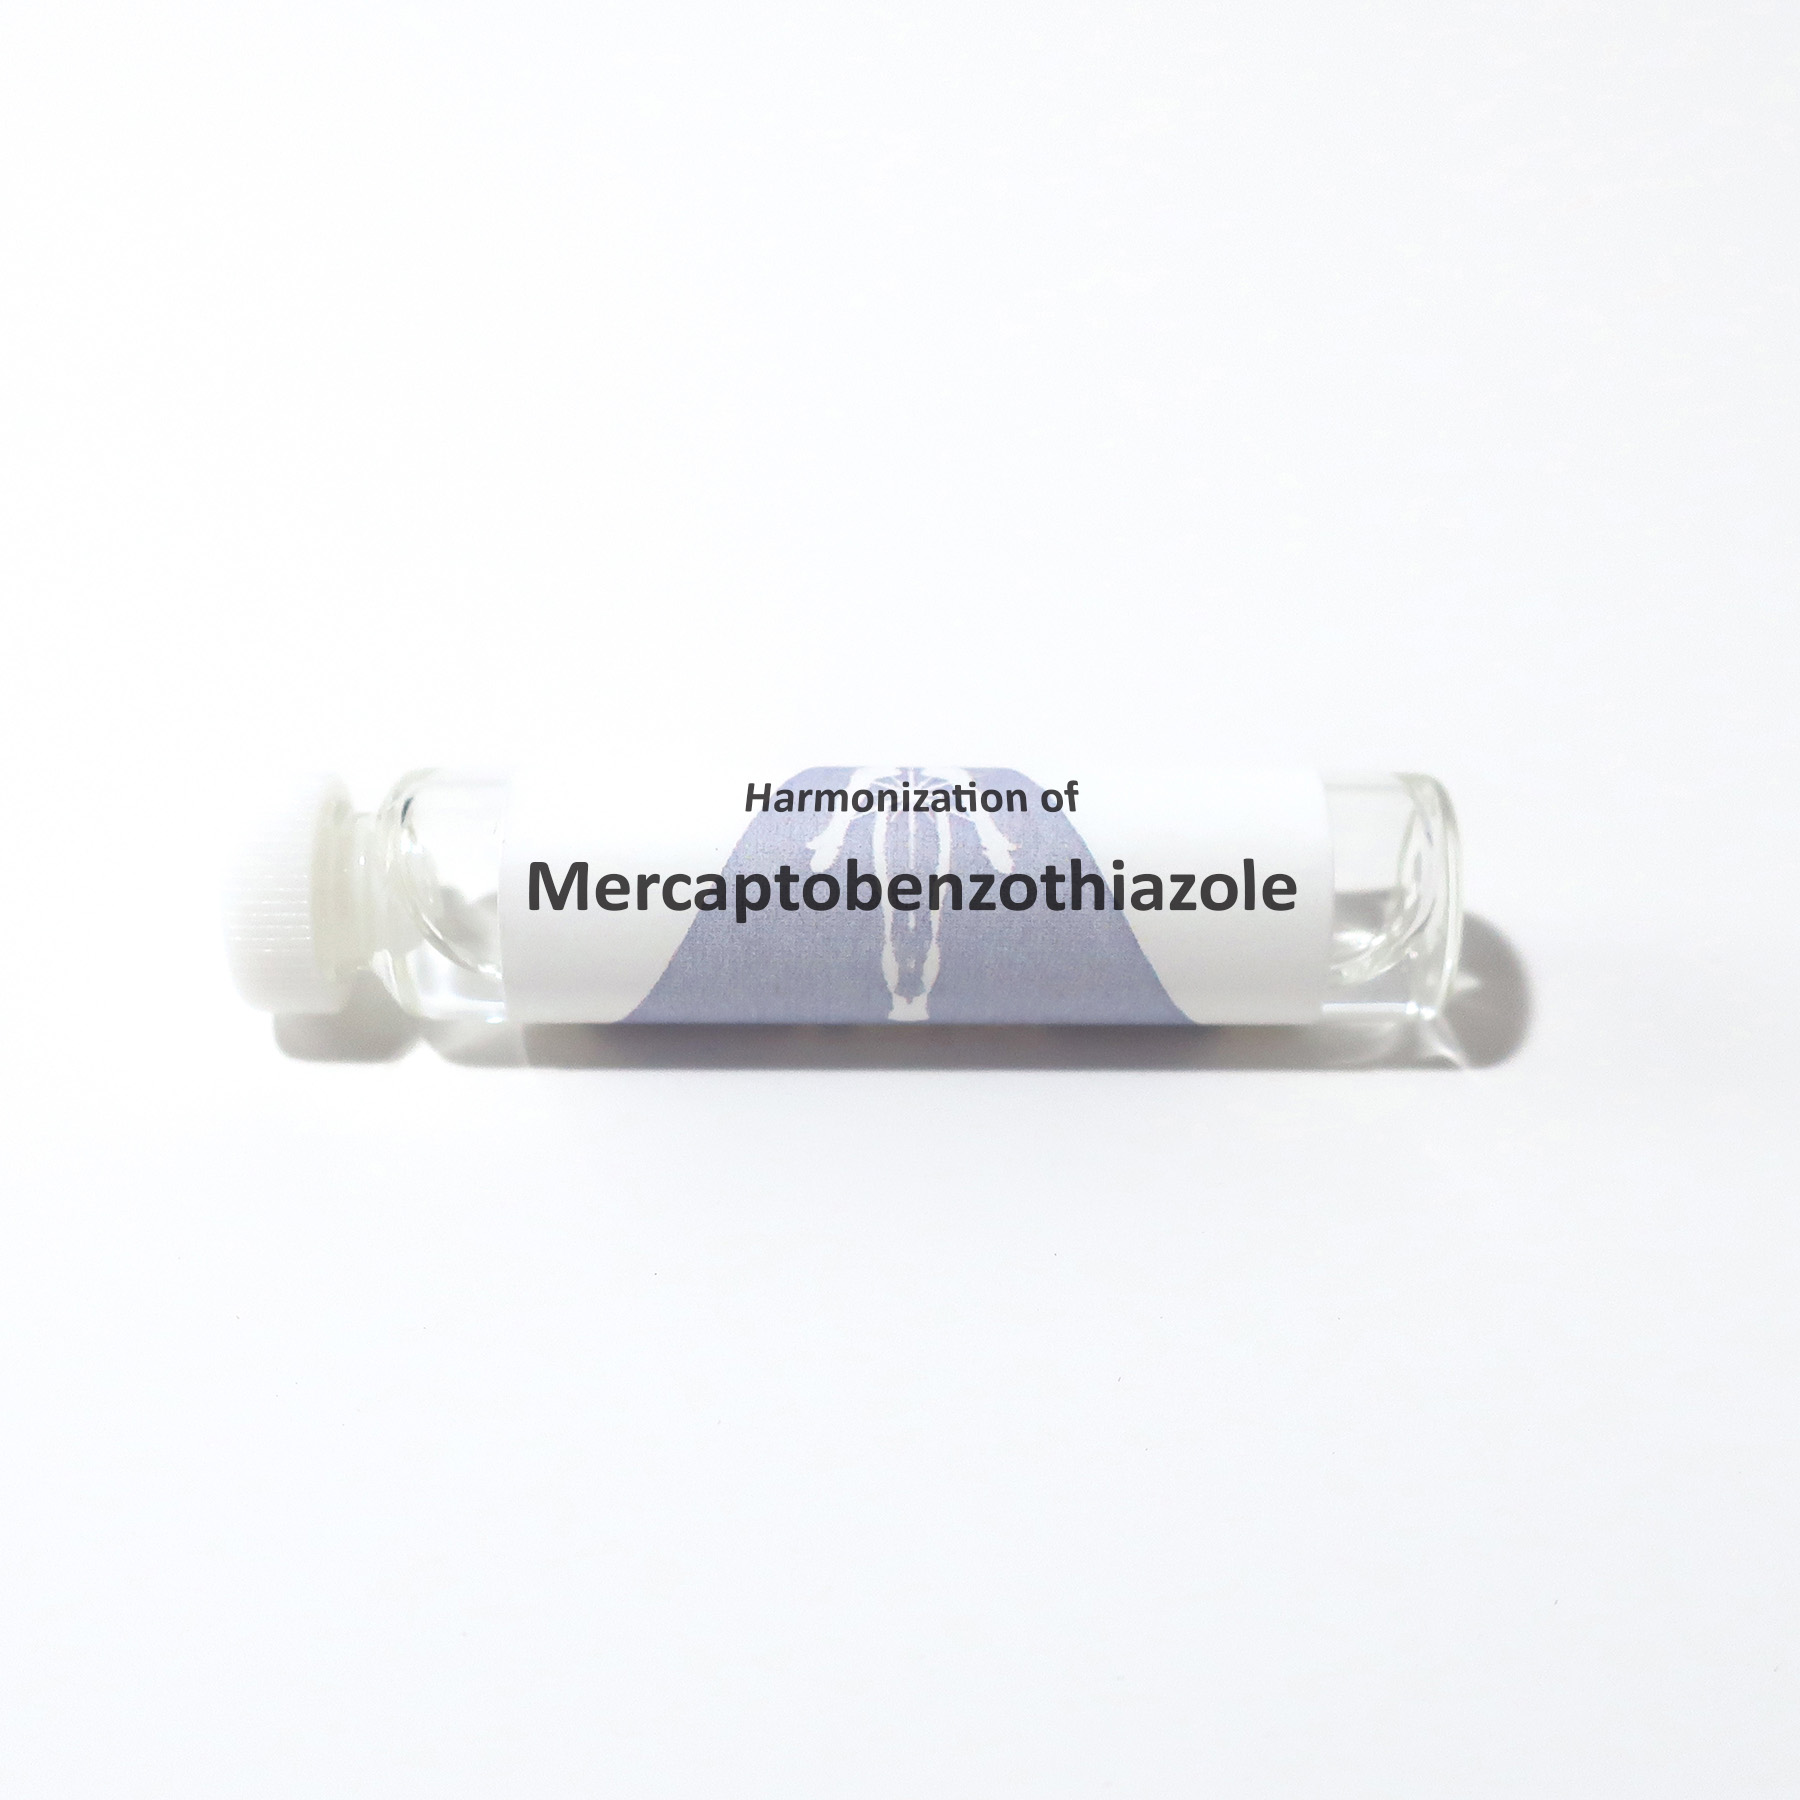 Mercaptobenzothiazole